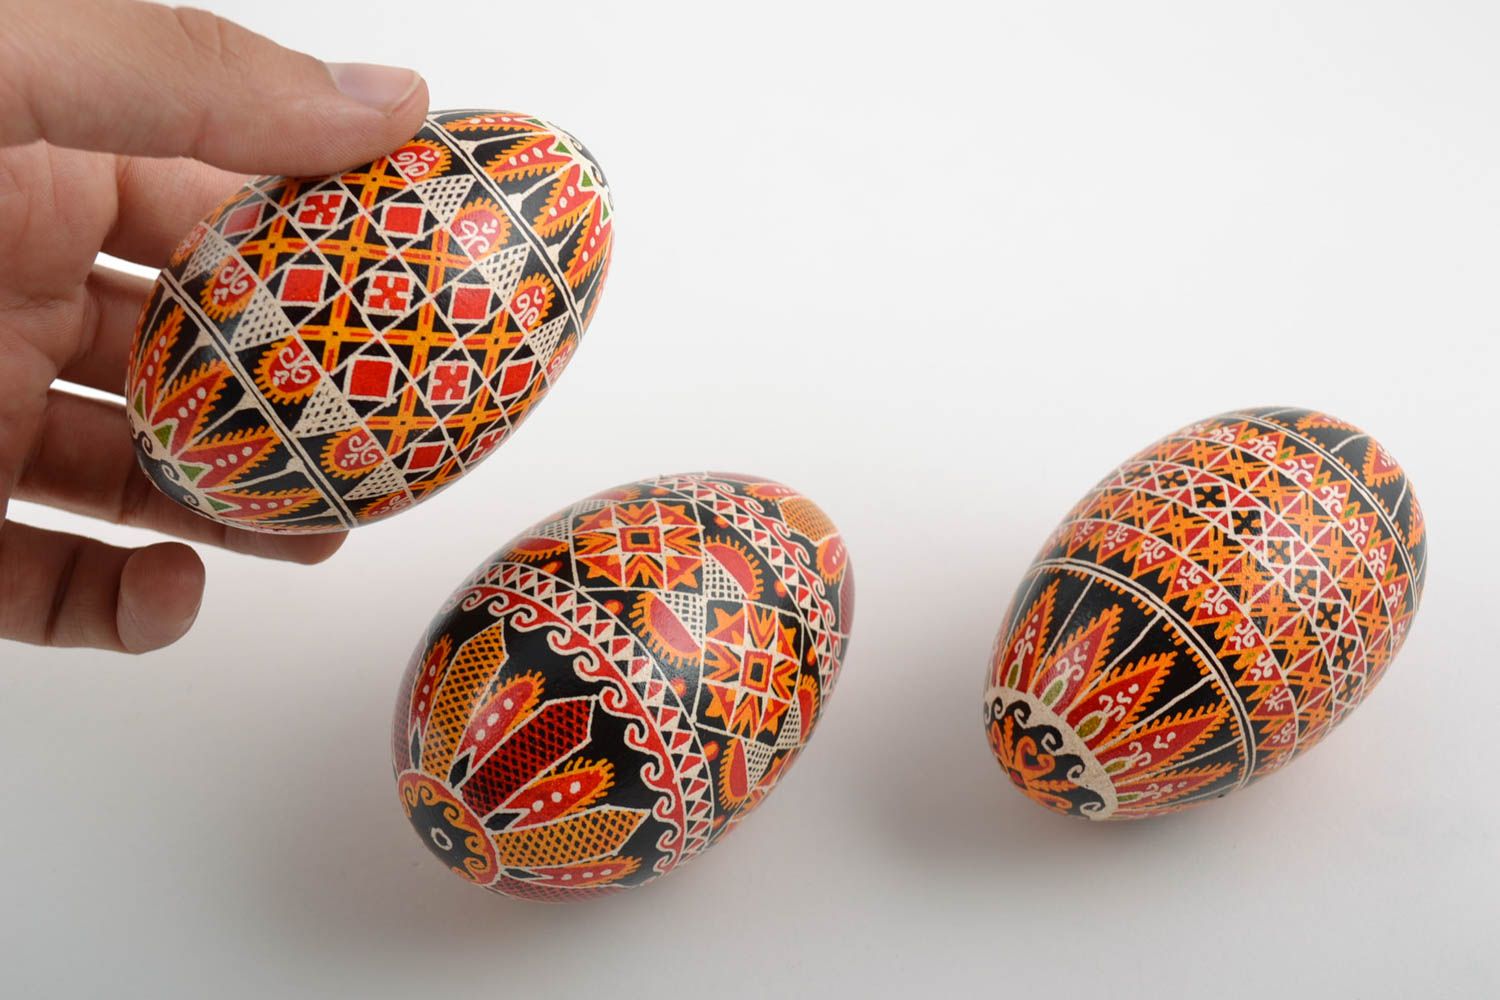 Расписные яйца набор из трех изделий красивые необычные подарок ручной работы фото 2